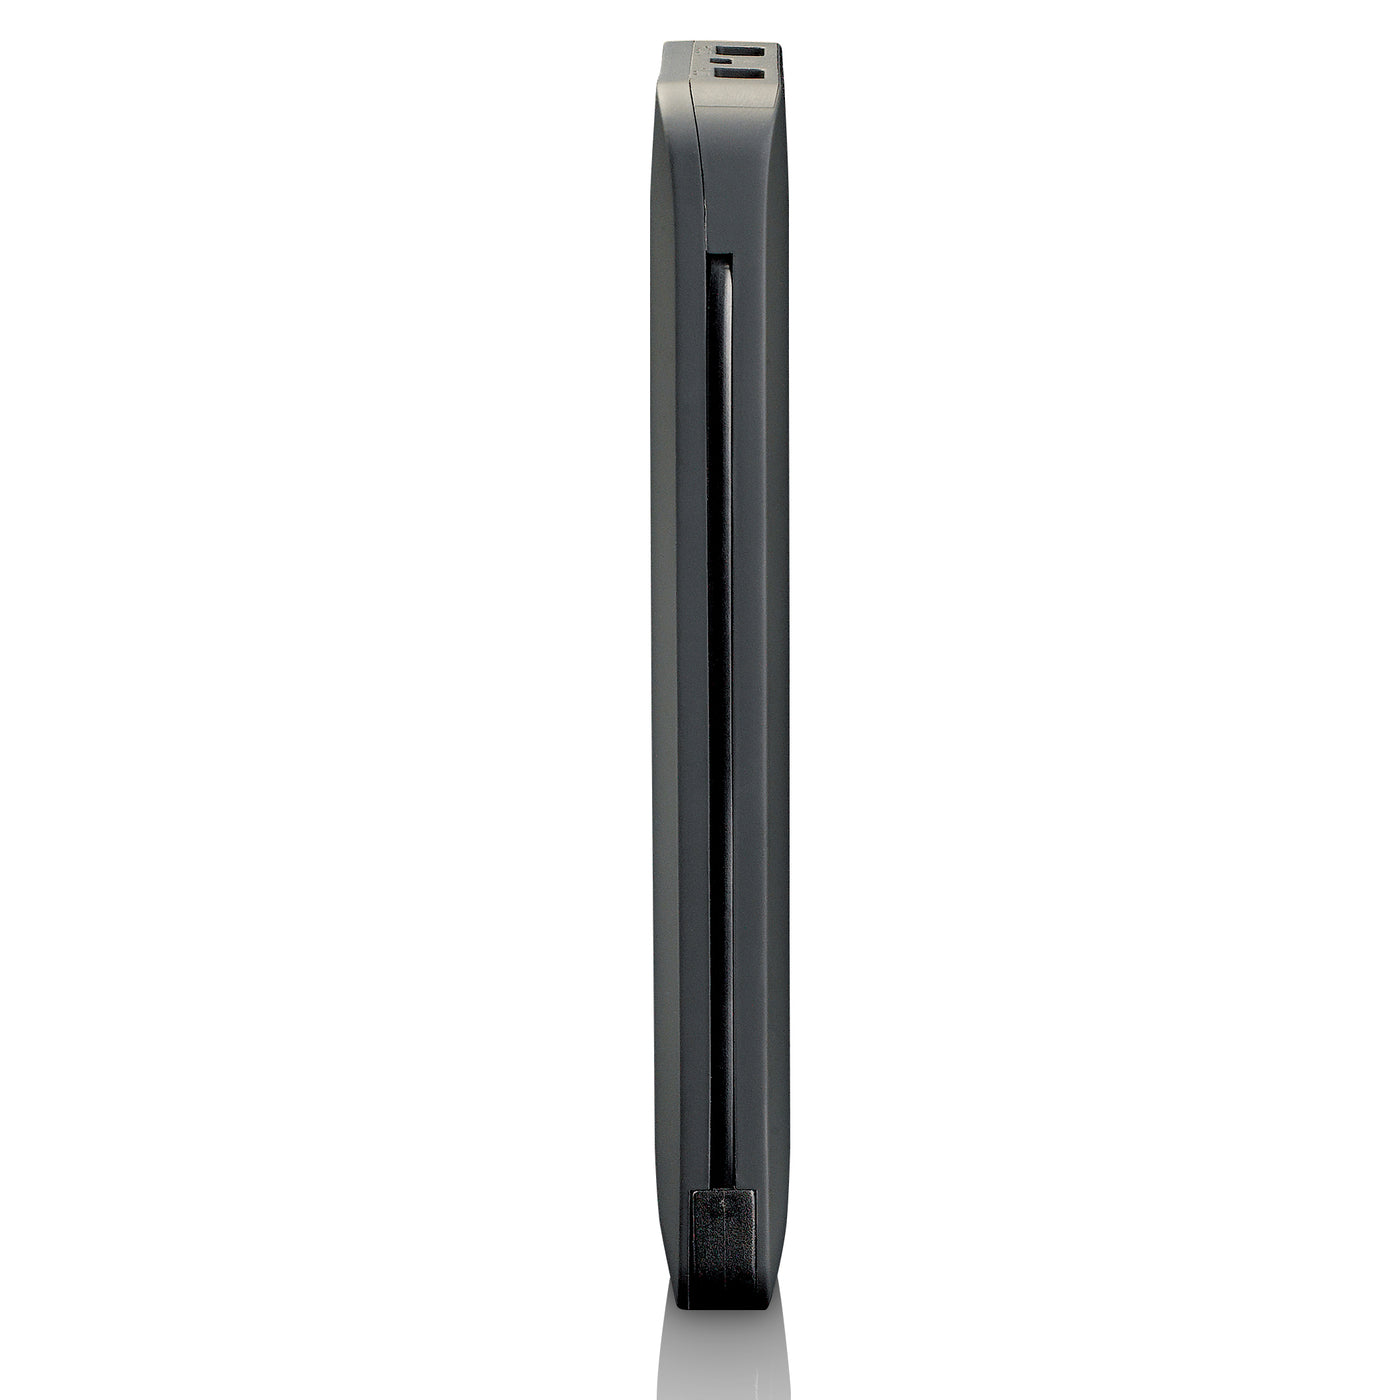 Lenco PBA-830 - Powerbank van 8000 mah Apple en USB aansluiting - Zwart